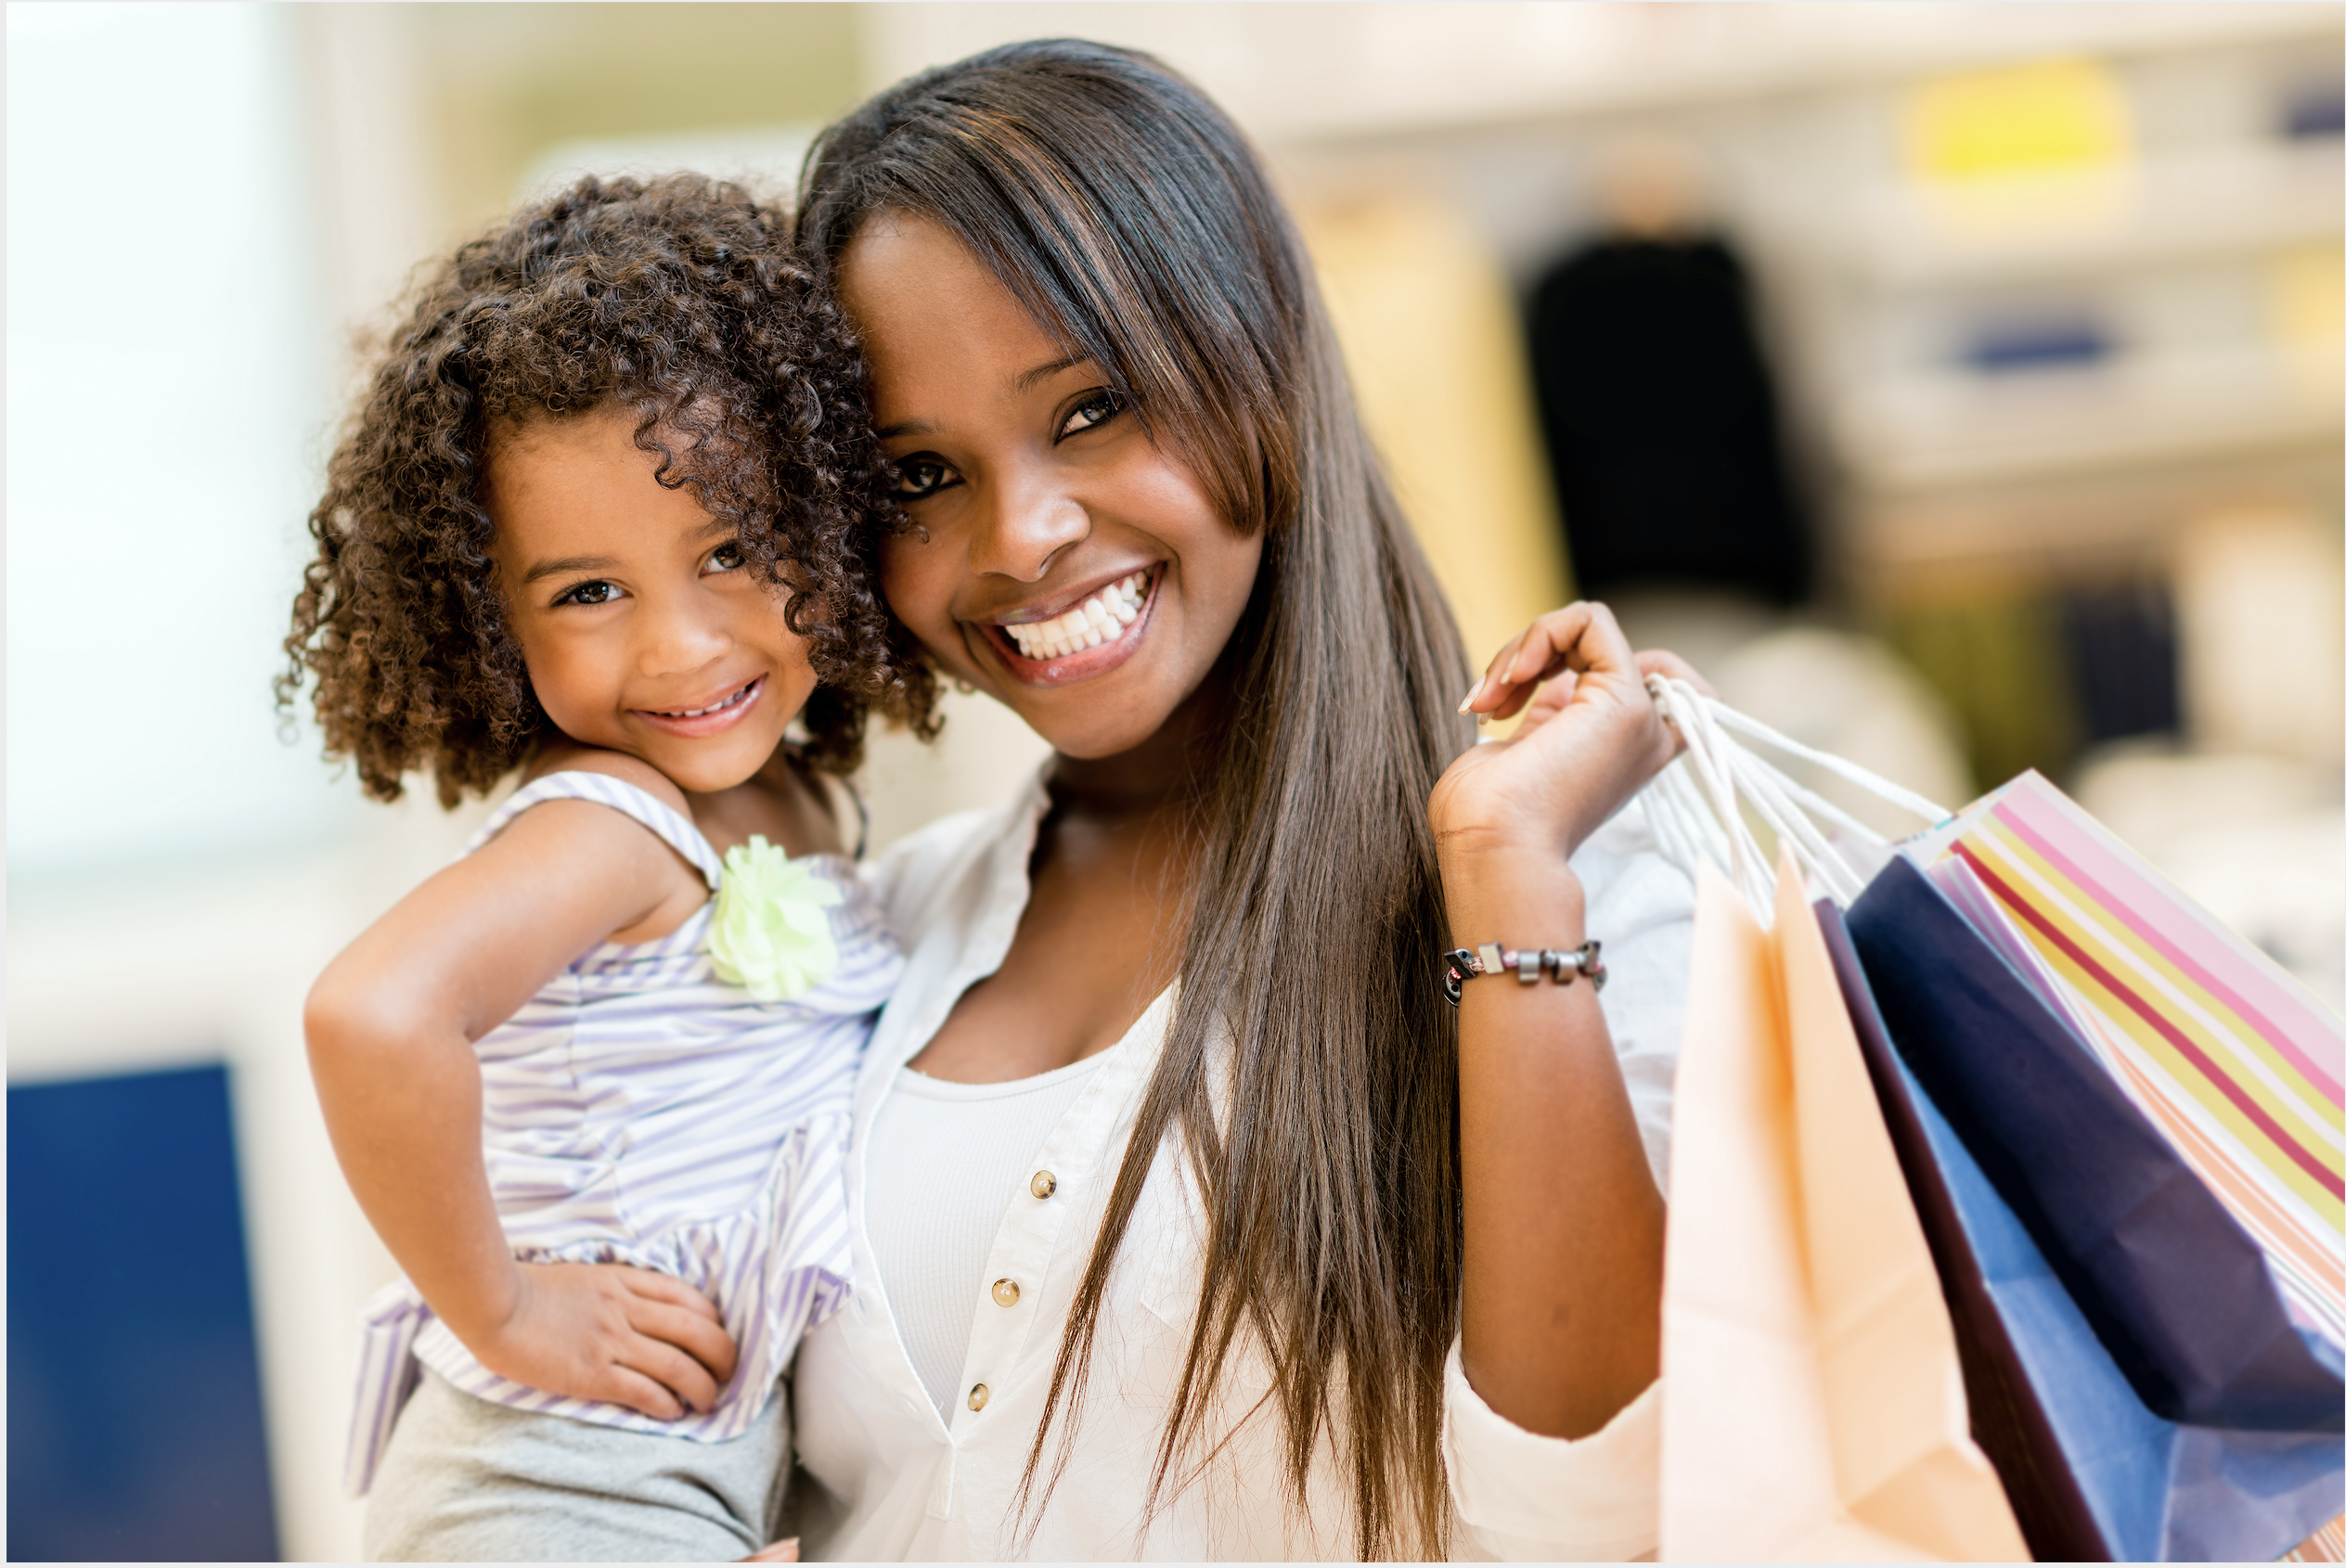 Mother wear. Шоппинг мамы с ребенком. Дети шоппинг. Дочь на руках афроамериканцы. Мама экономит.